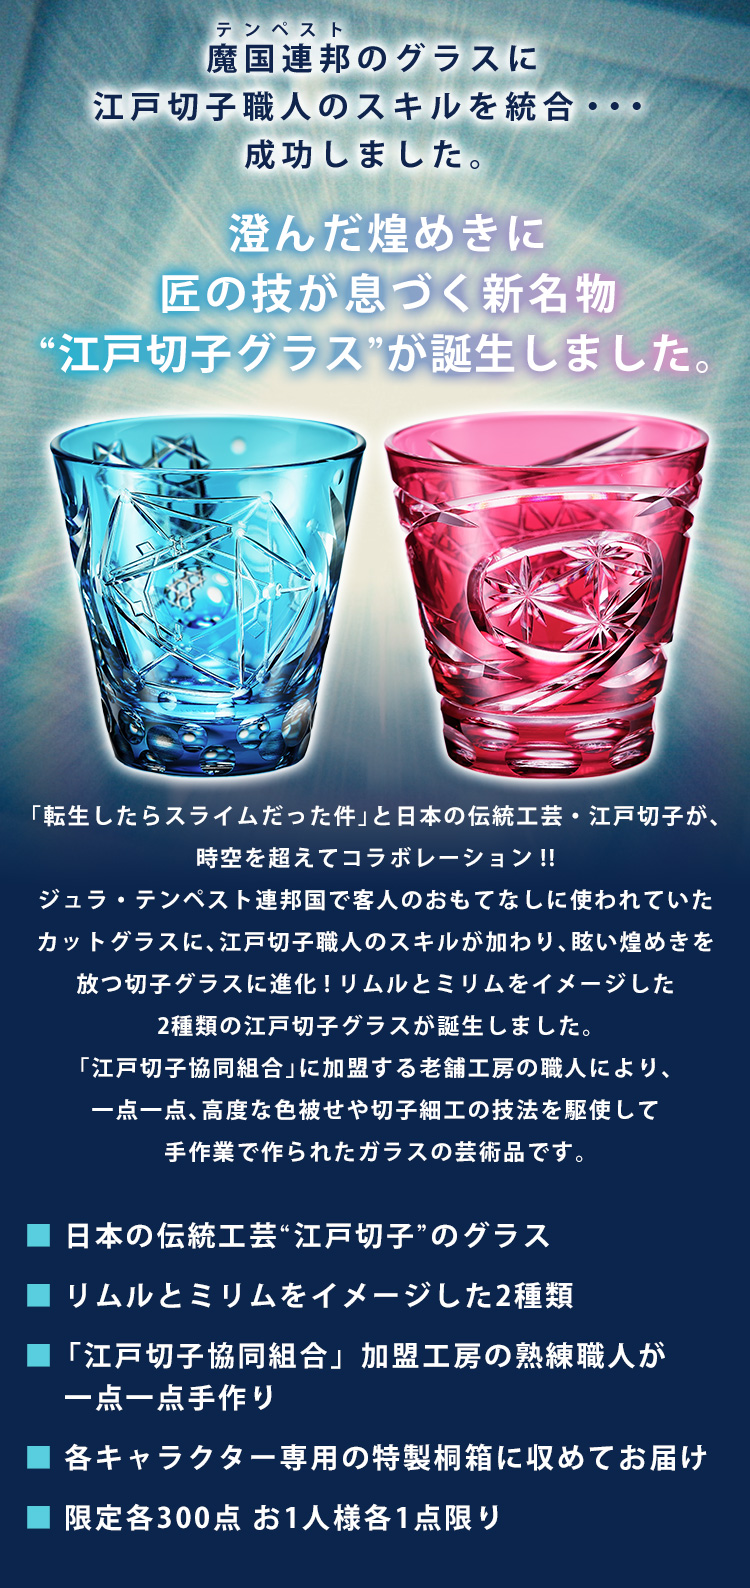 魔国連邦のグラスに江戸切子職人のスキルを統合・・・成功しました。澄んだ煌めきに匠の技が息づく新名物“江戸切子グラス”が誕生しました。